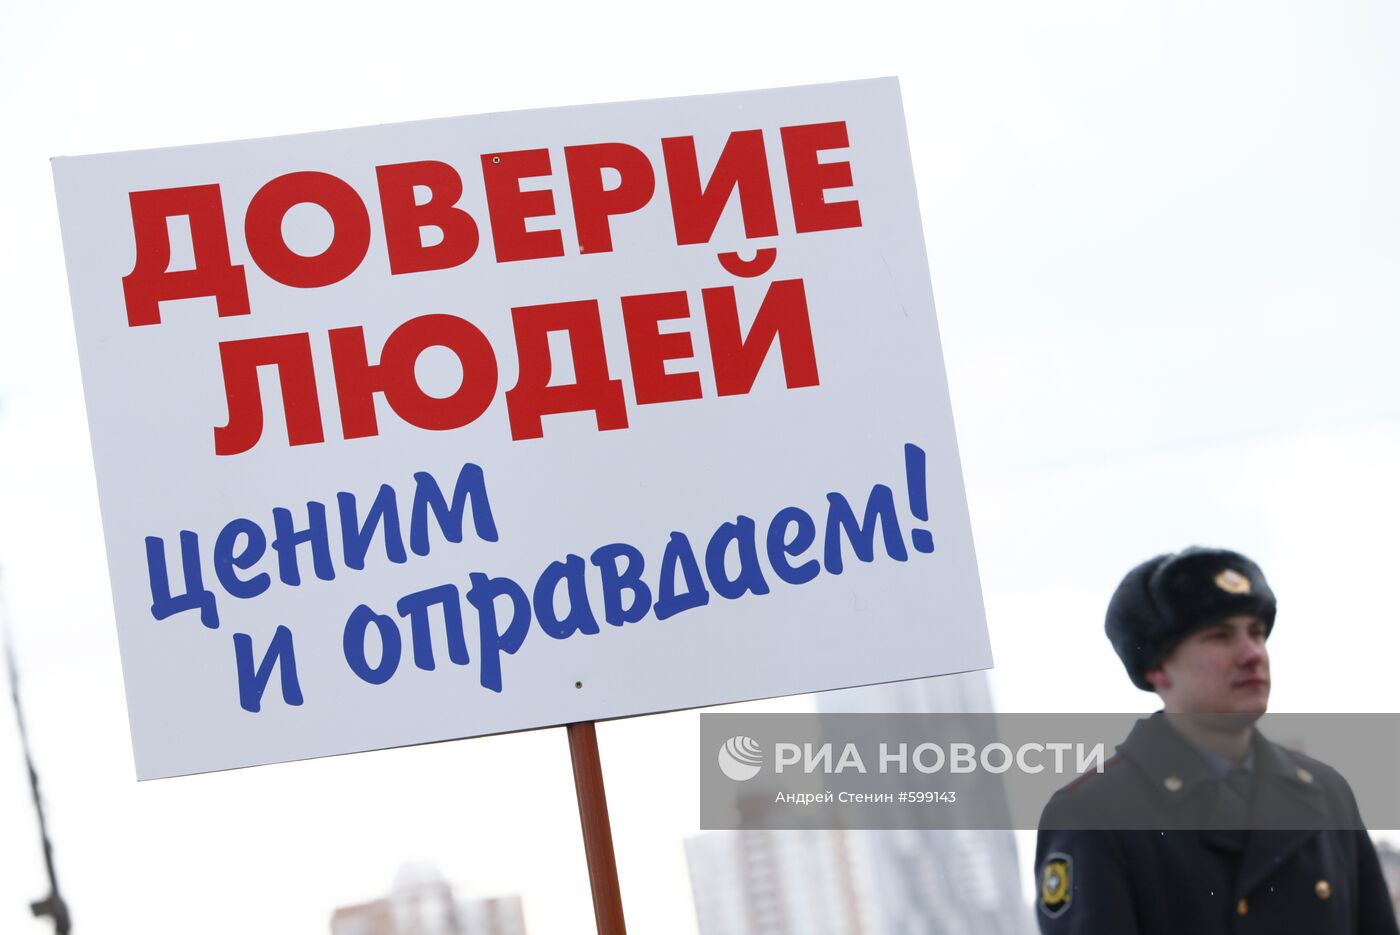 На митинге, проведенном партией "Единая Россия"